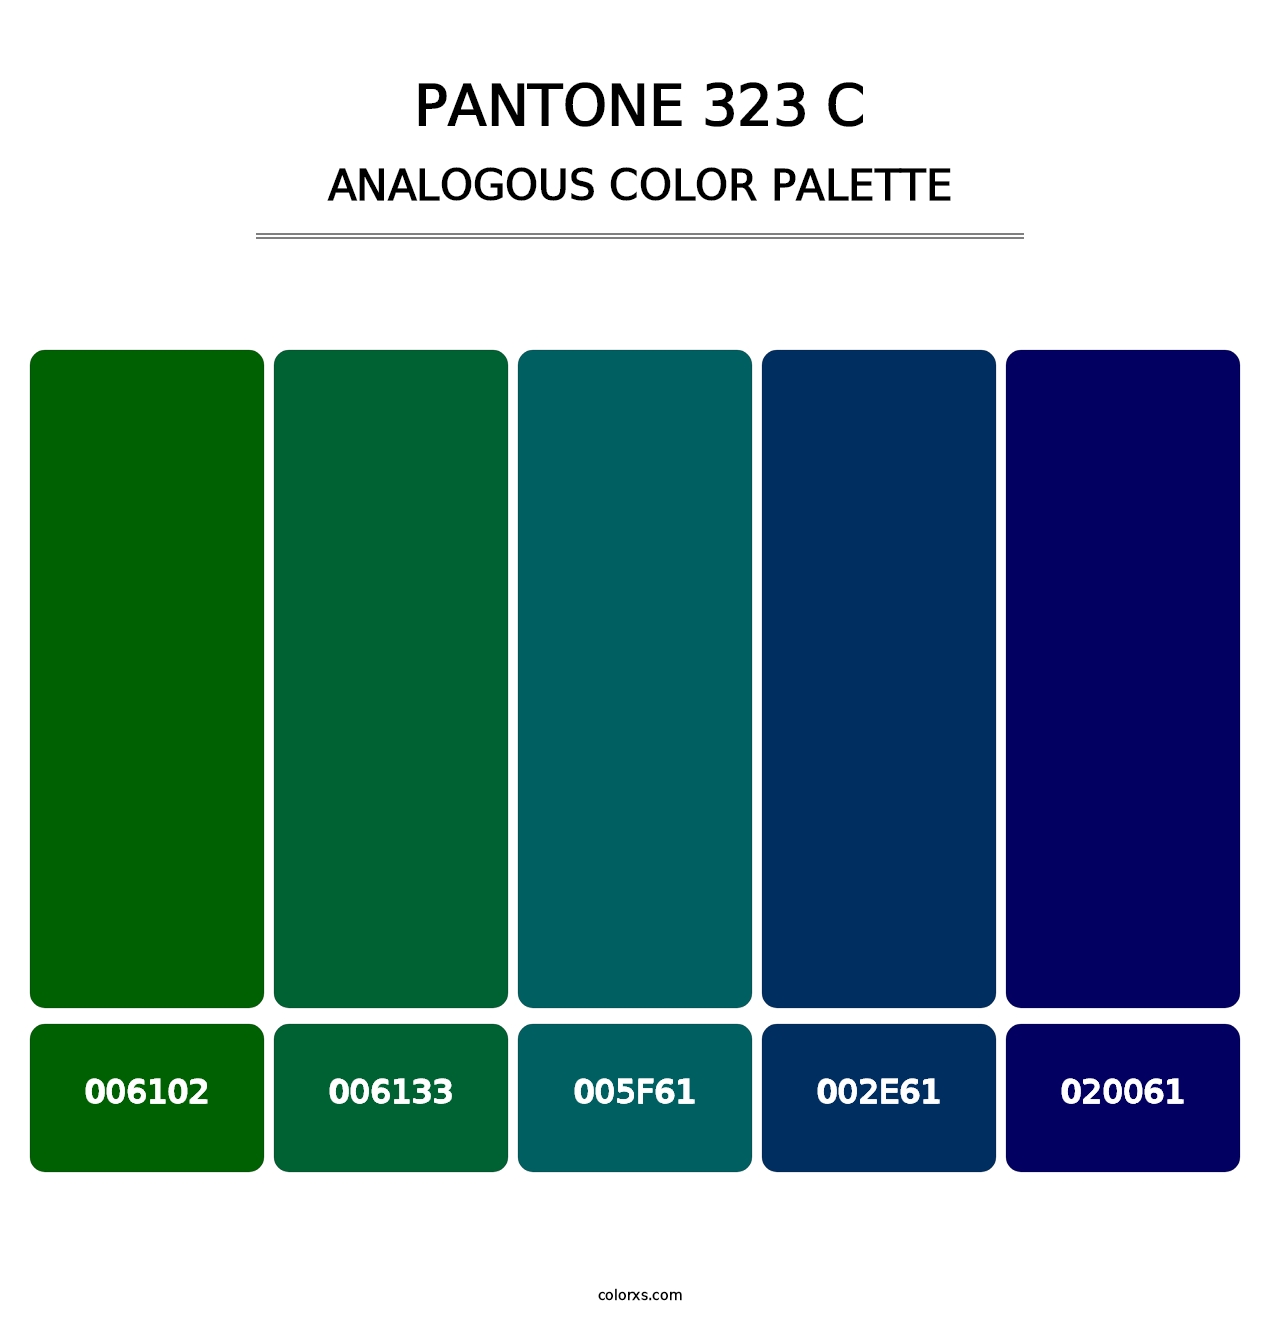 PANTONE 323 C - Analogous Color Palette